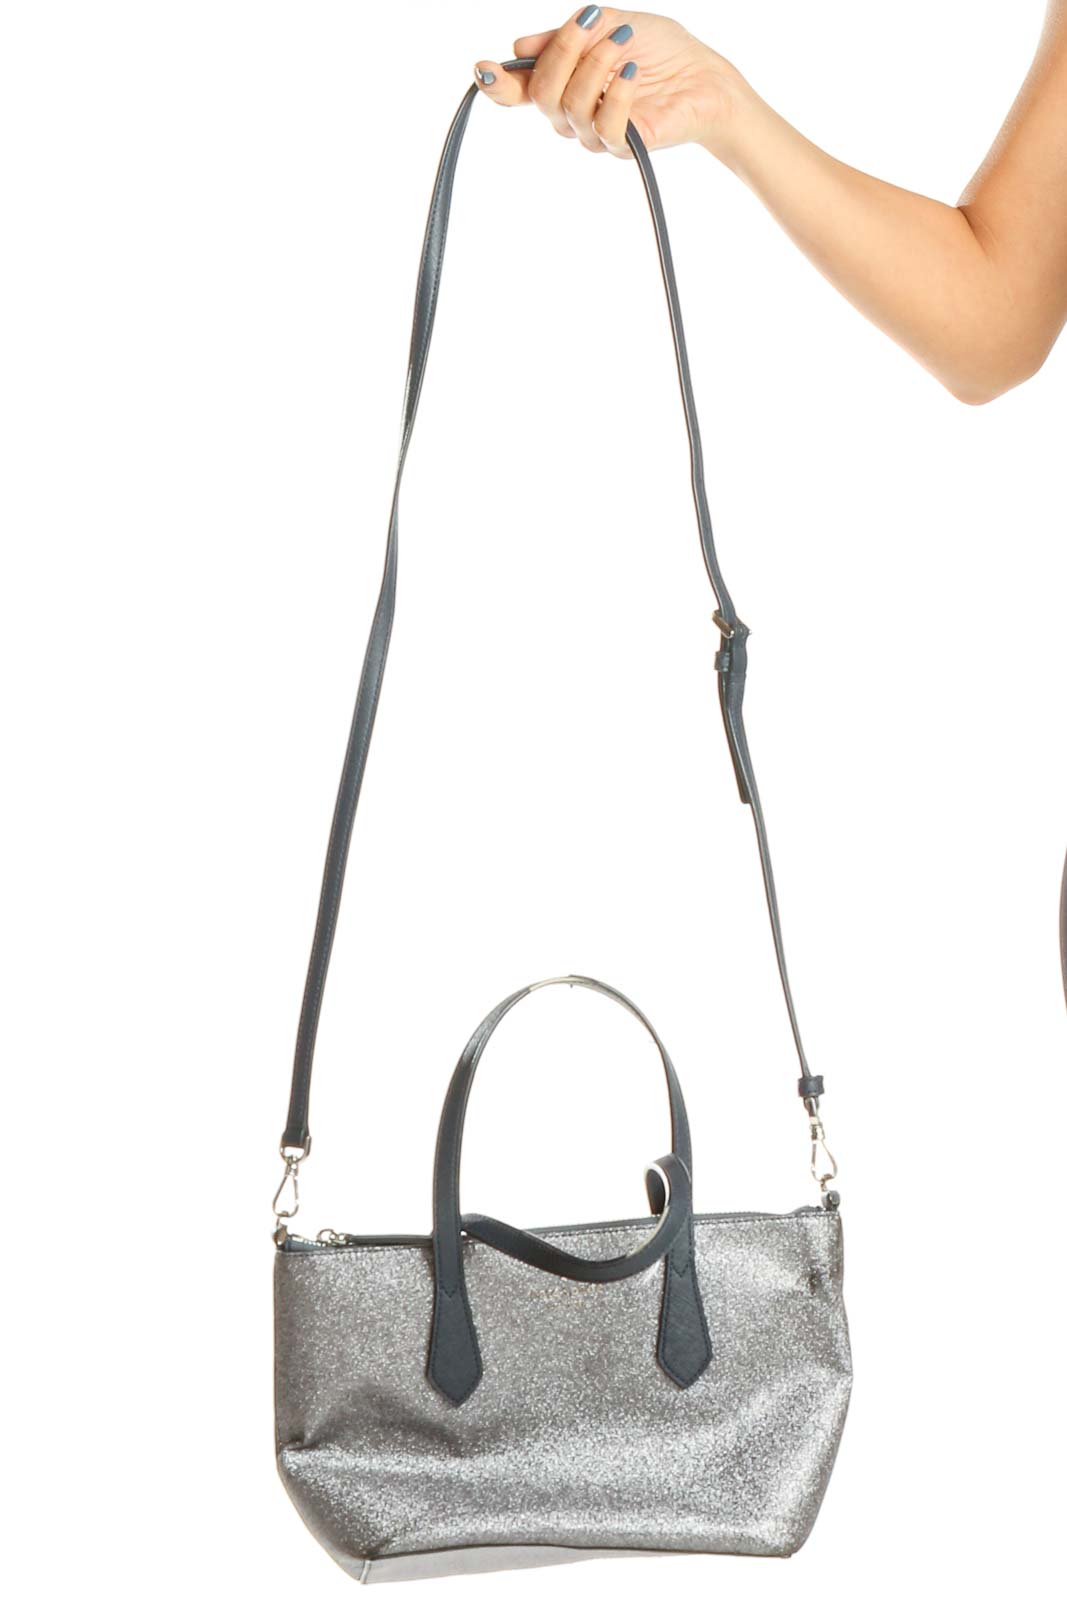 Gray Shimmer Satchel Bag Front